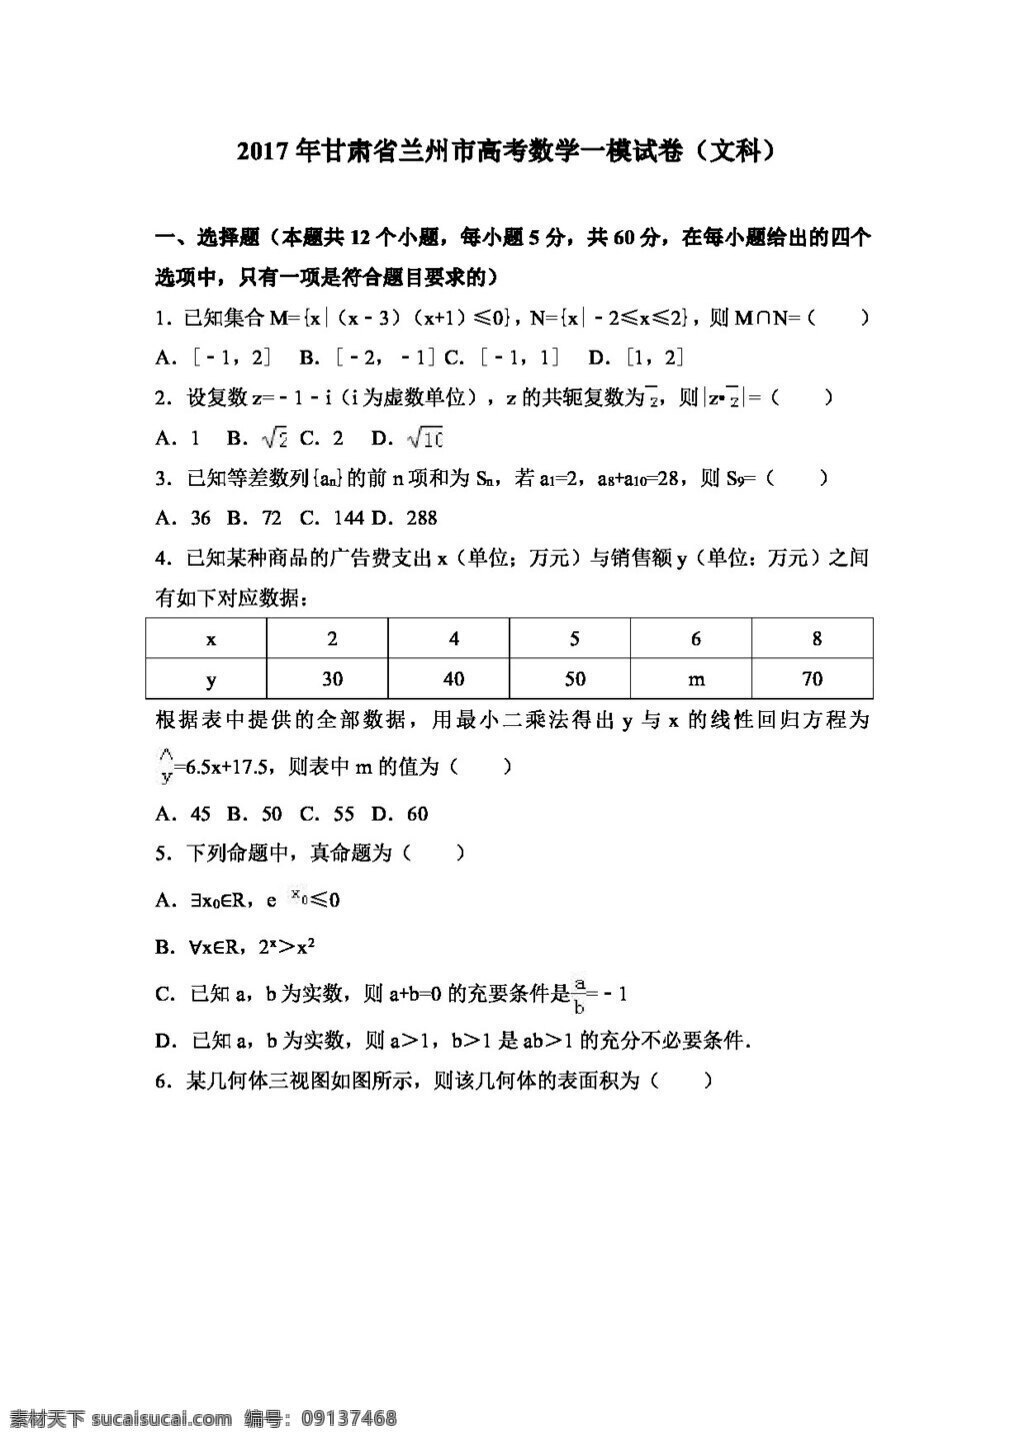 数学 人教 版 2017 年 甘肃省 兰州市 高考 模 试卷 文科 高考专区 人教版